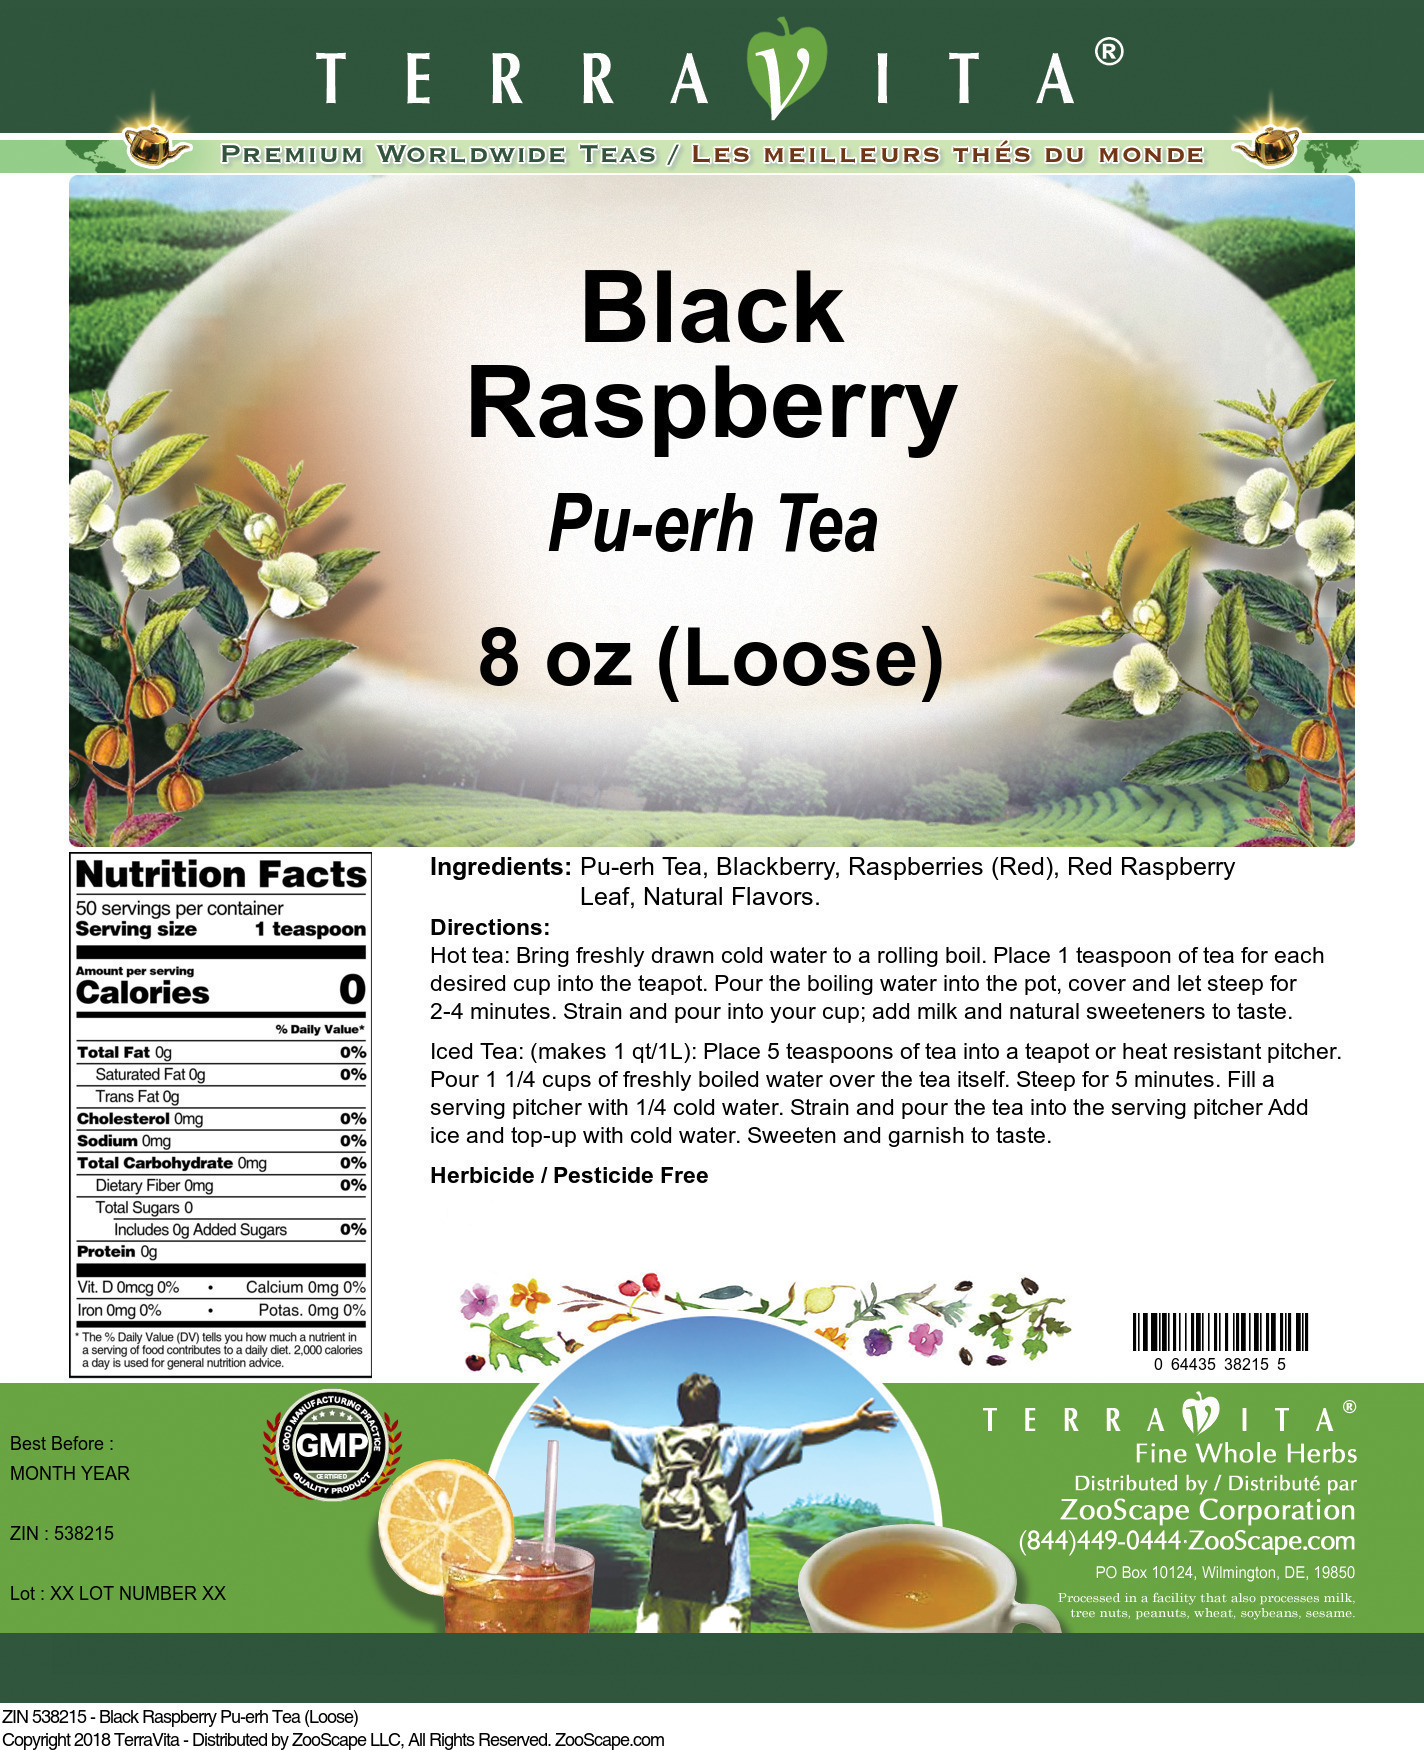 Black Raspberry Pu-erh Tea (Loose) - Label